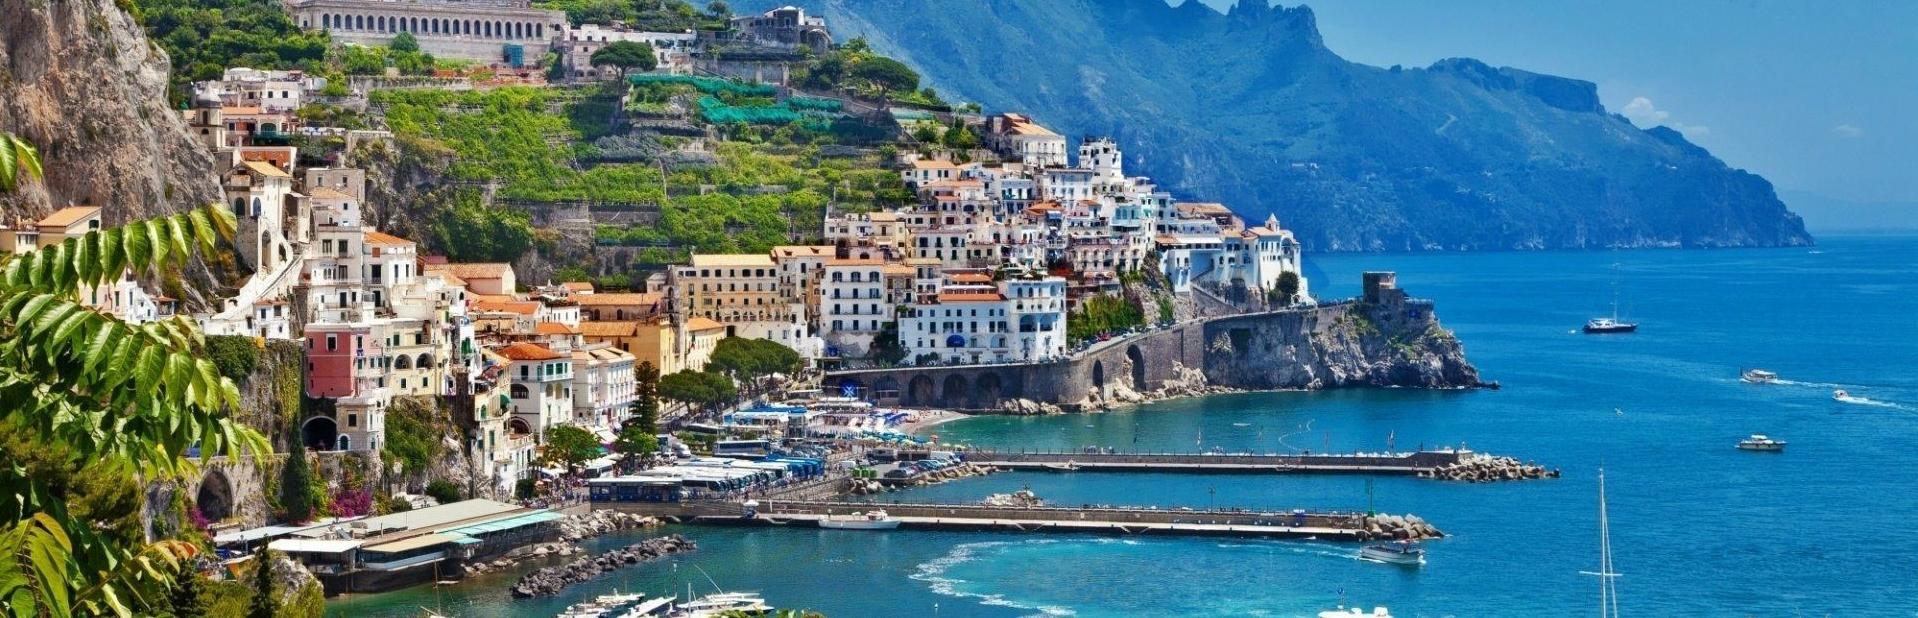 Индивидуальные туры на Сицилию цены